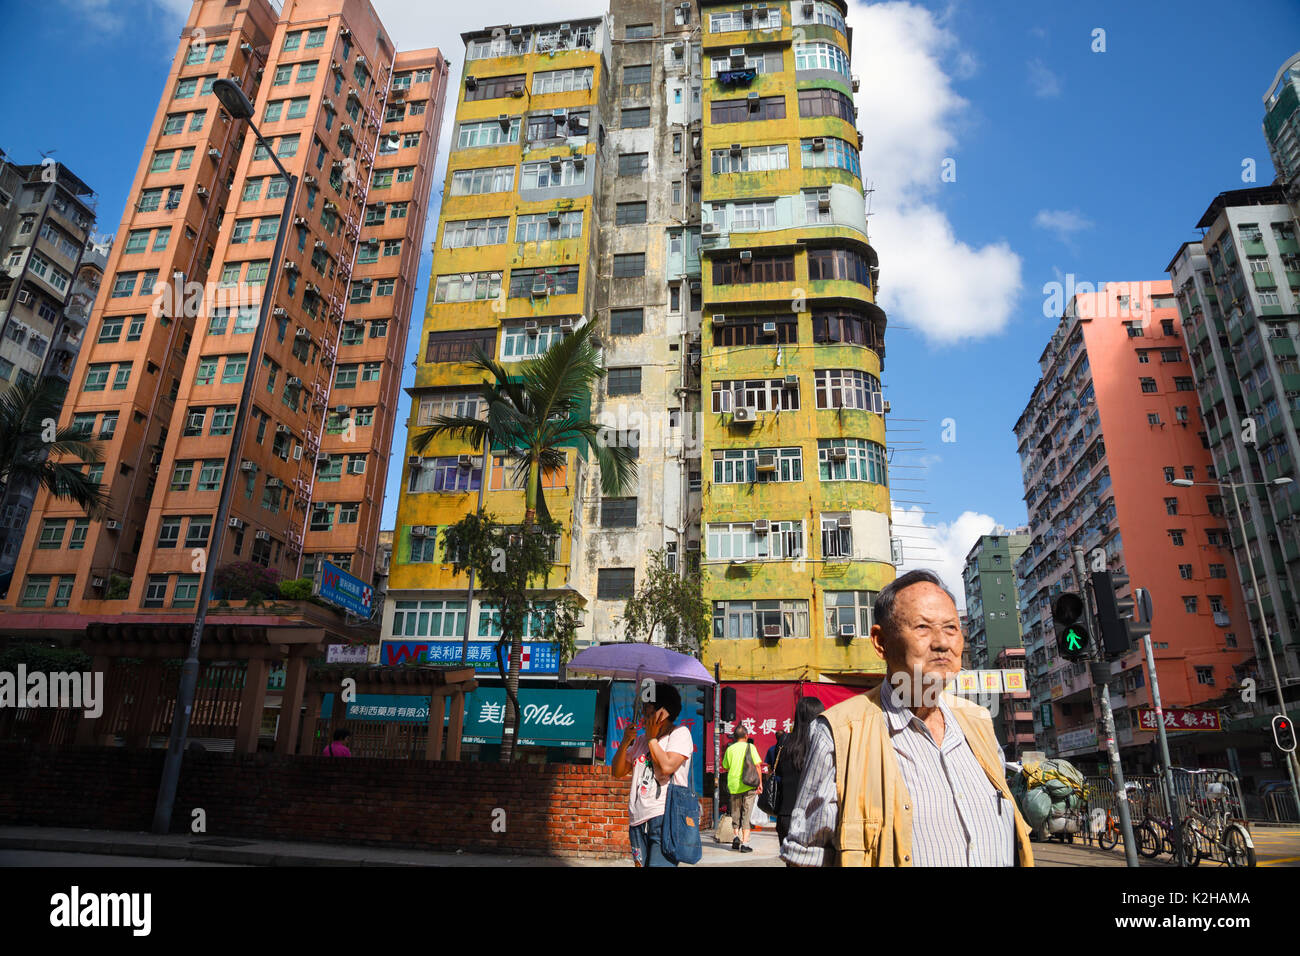 Un hombre camina por las calles de Kowloon, con construcciones típicas, Hong Kong Foto de stock